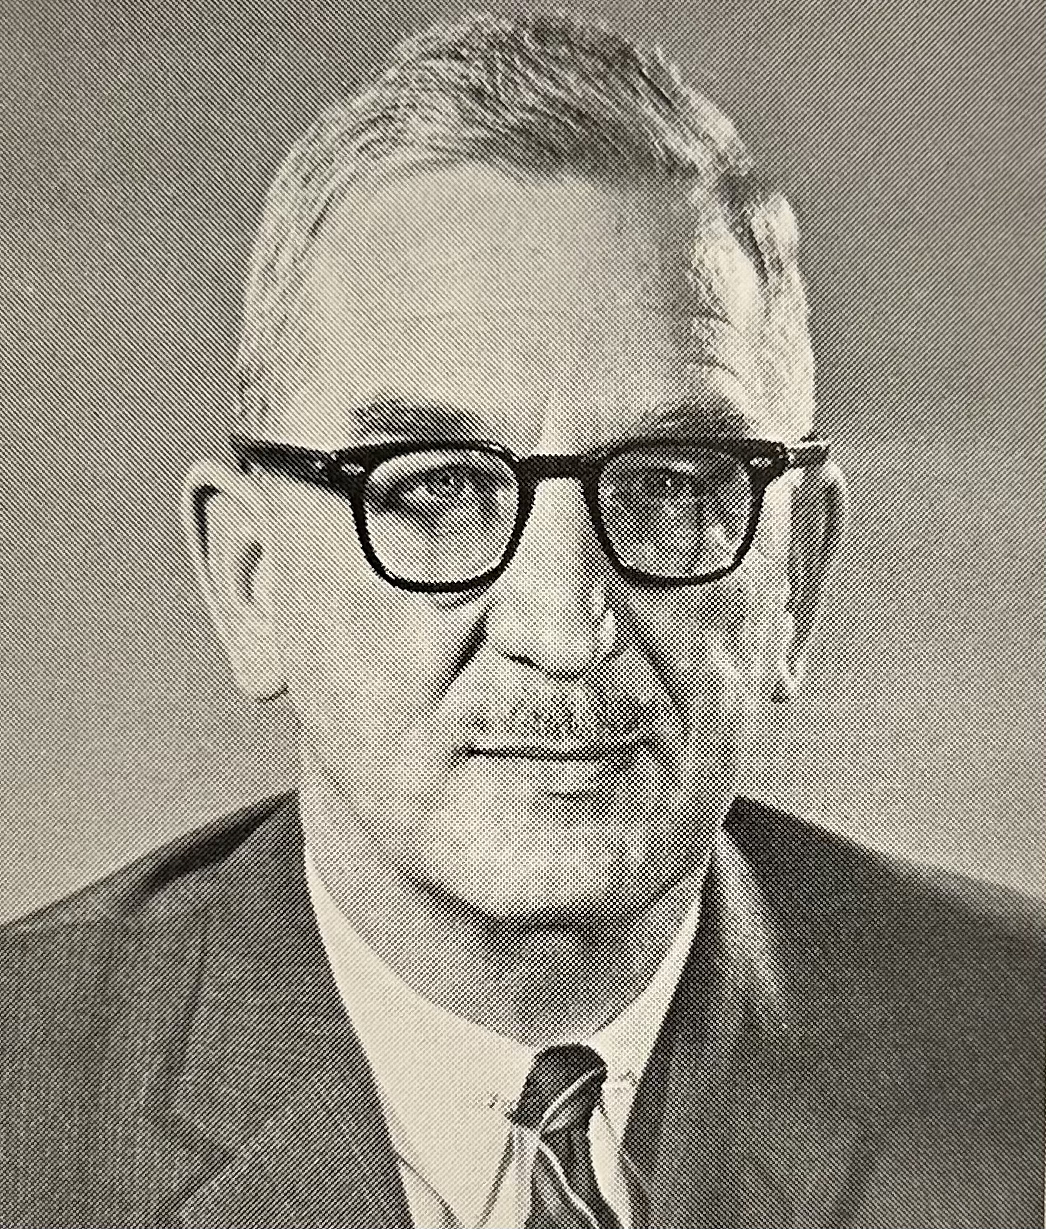 Lewis H. Rohrbaugh